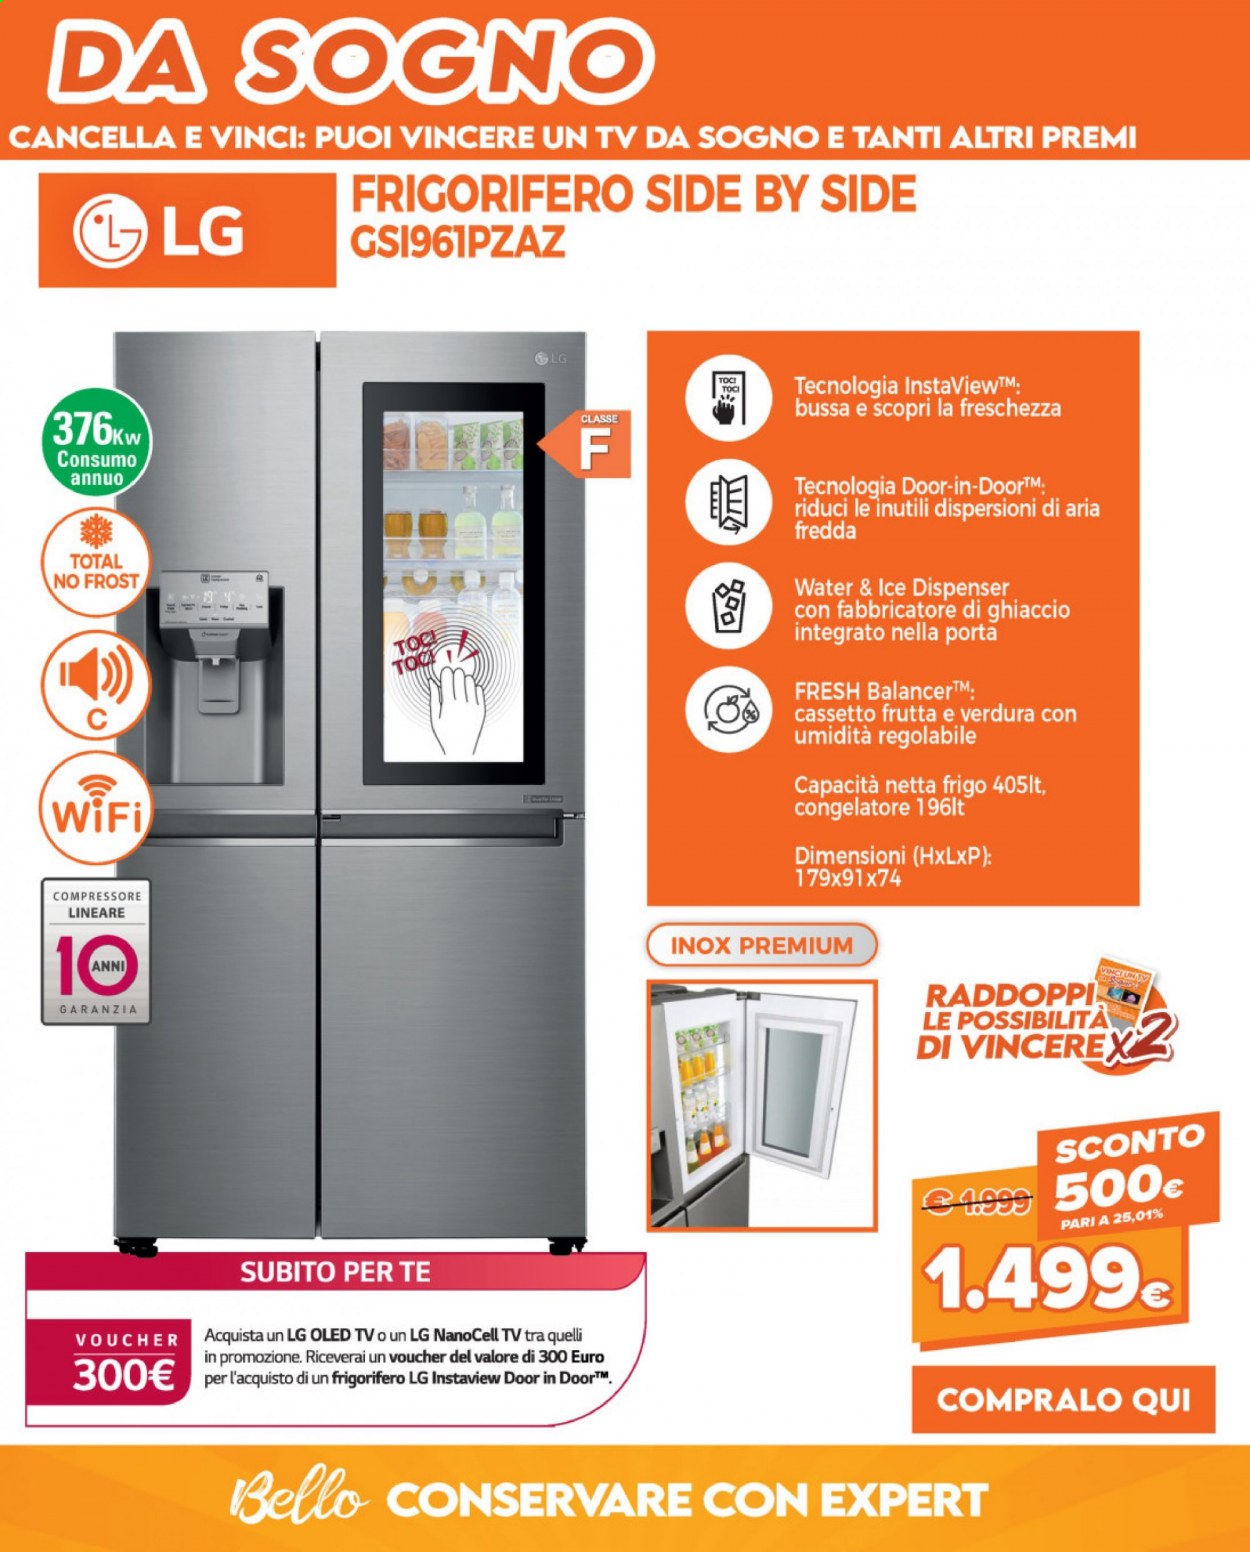 thumbnail - Volantino Expert - 5/7/2021 - 22/7/2021 - Prodotti in offerta - LG, televisore, frigorifero, frigorifero due porte, congelatore, fabbricatore di ghiaccio. Pagina 32.